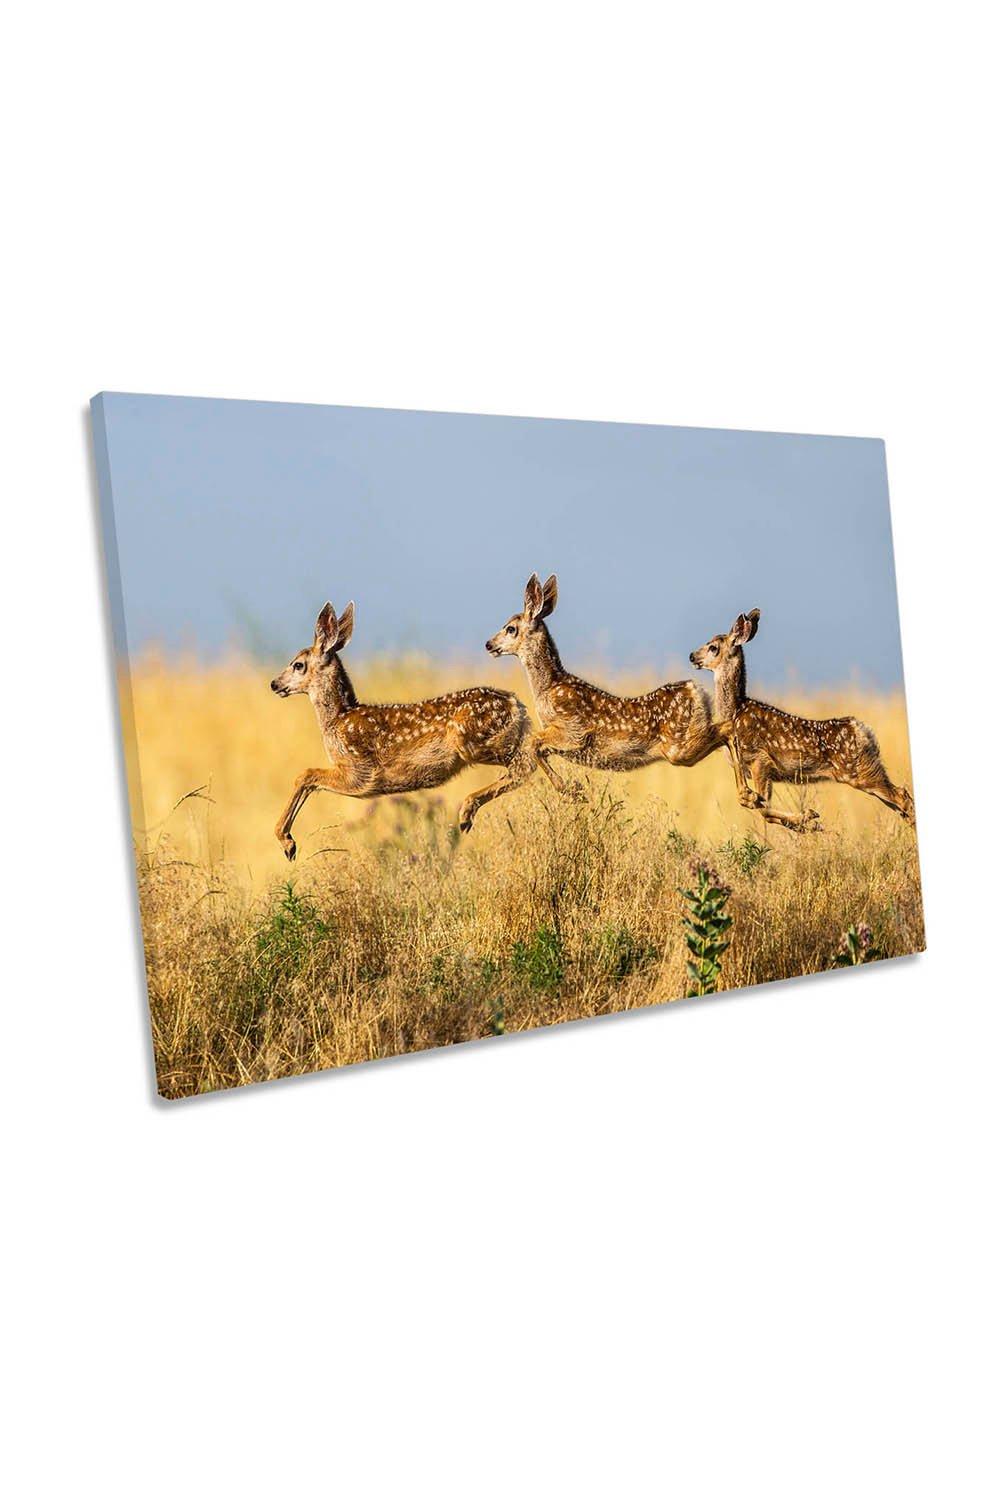 Triple Jump Deers Wildlife Canvas Wall Art Picture Print